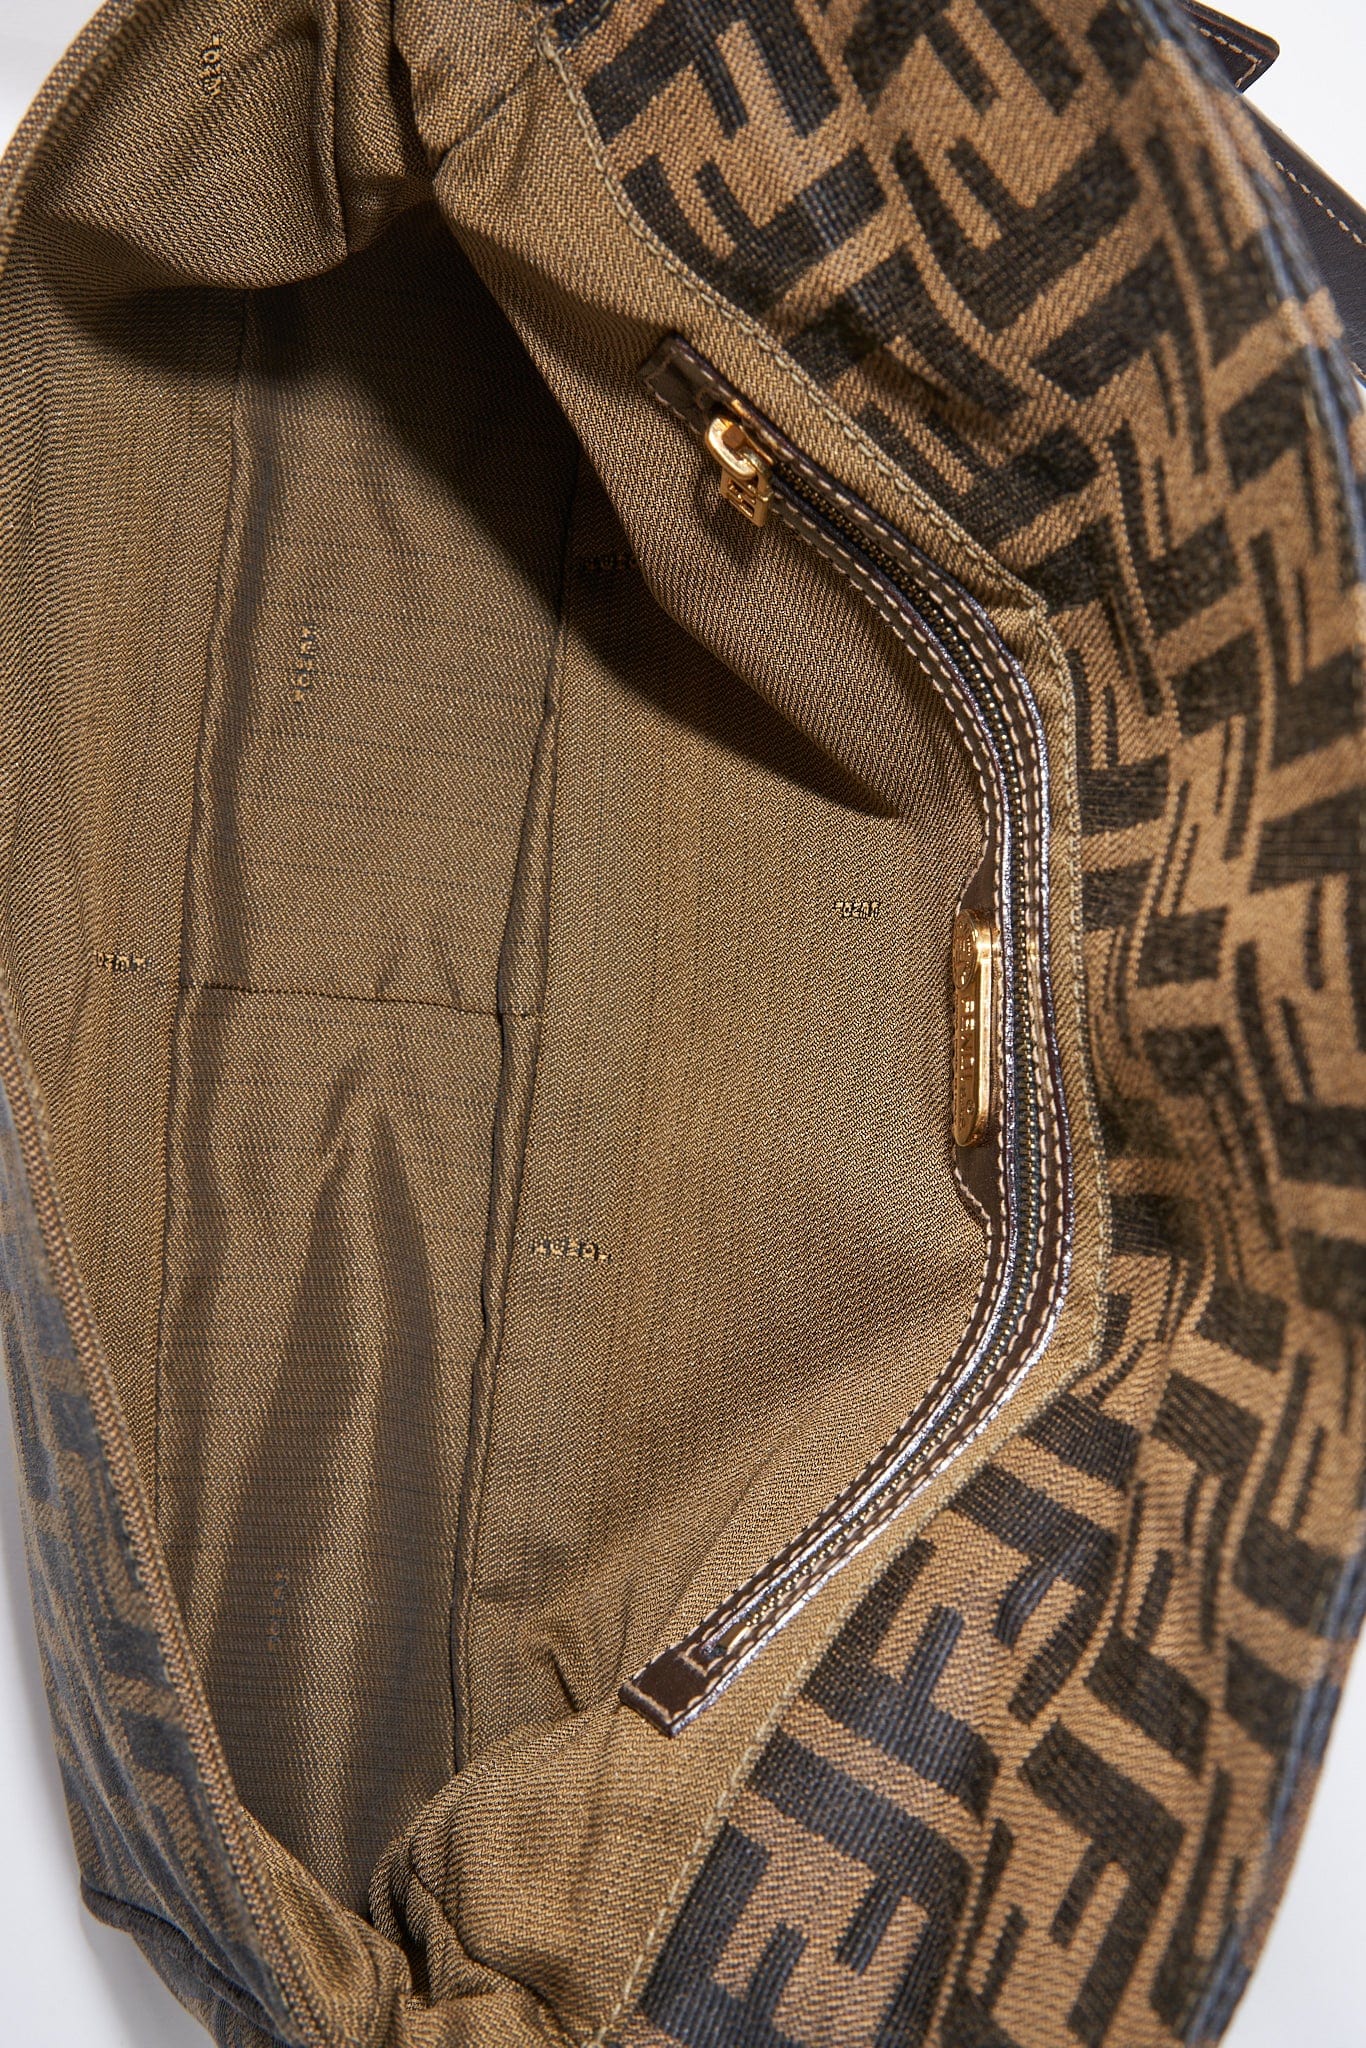 Vintage Fendi Zucca Shoulder Bag - Brown